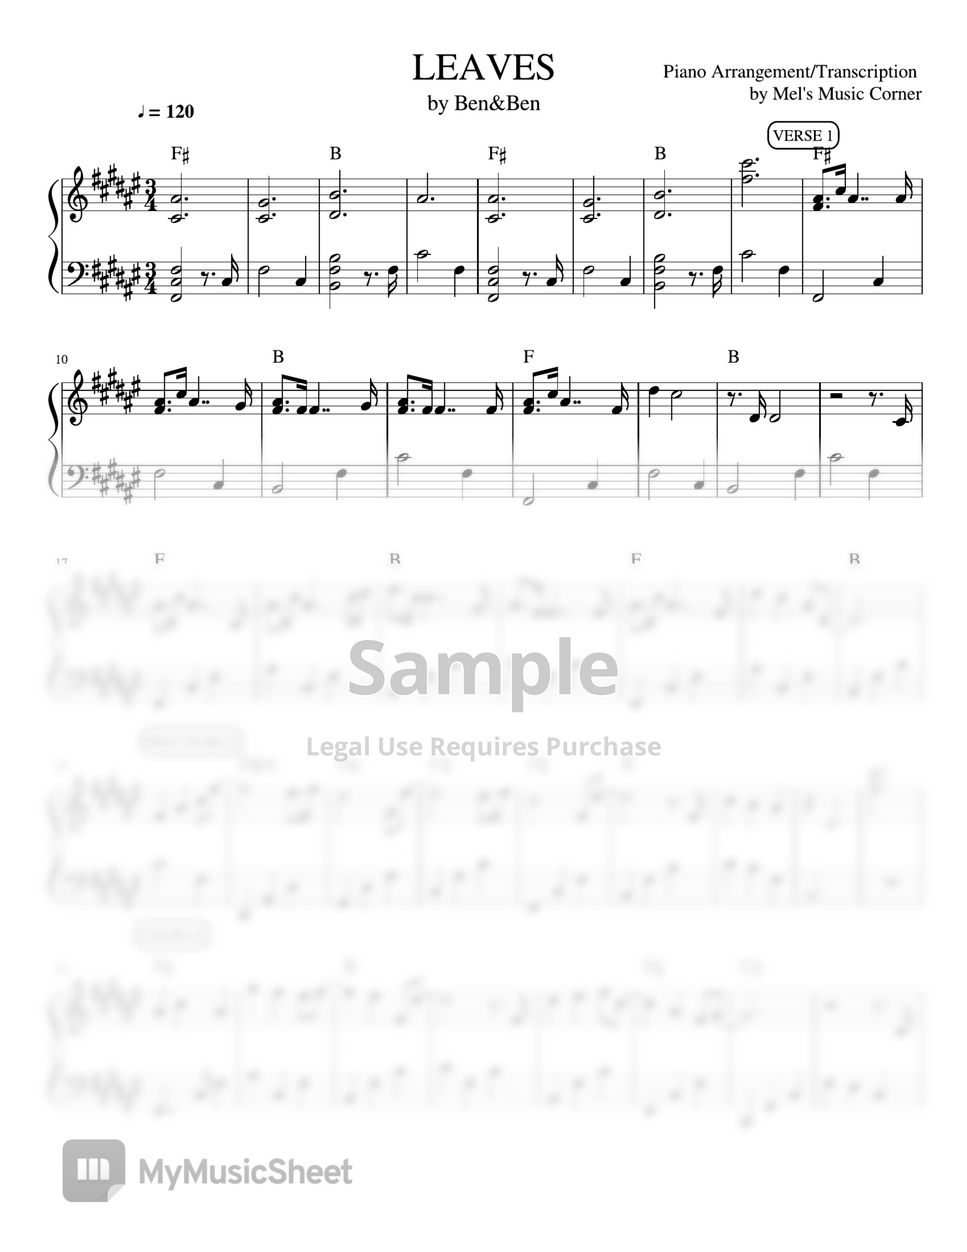 Ben&Ben - Leaves (piano sheet music) by Mel's Music Corner